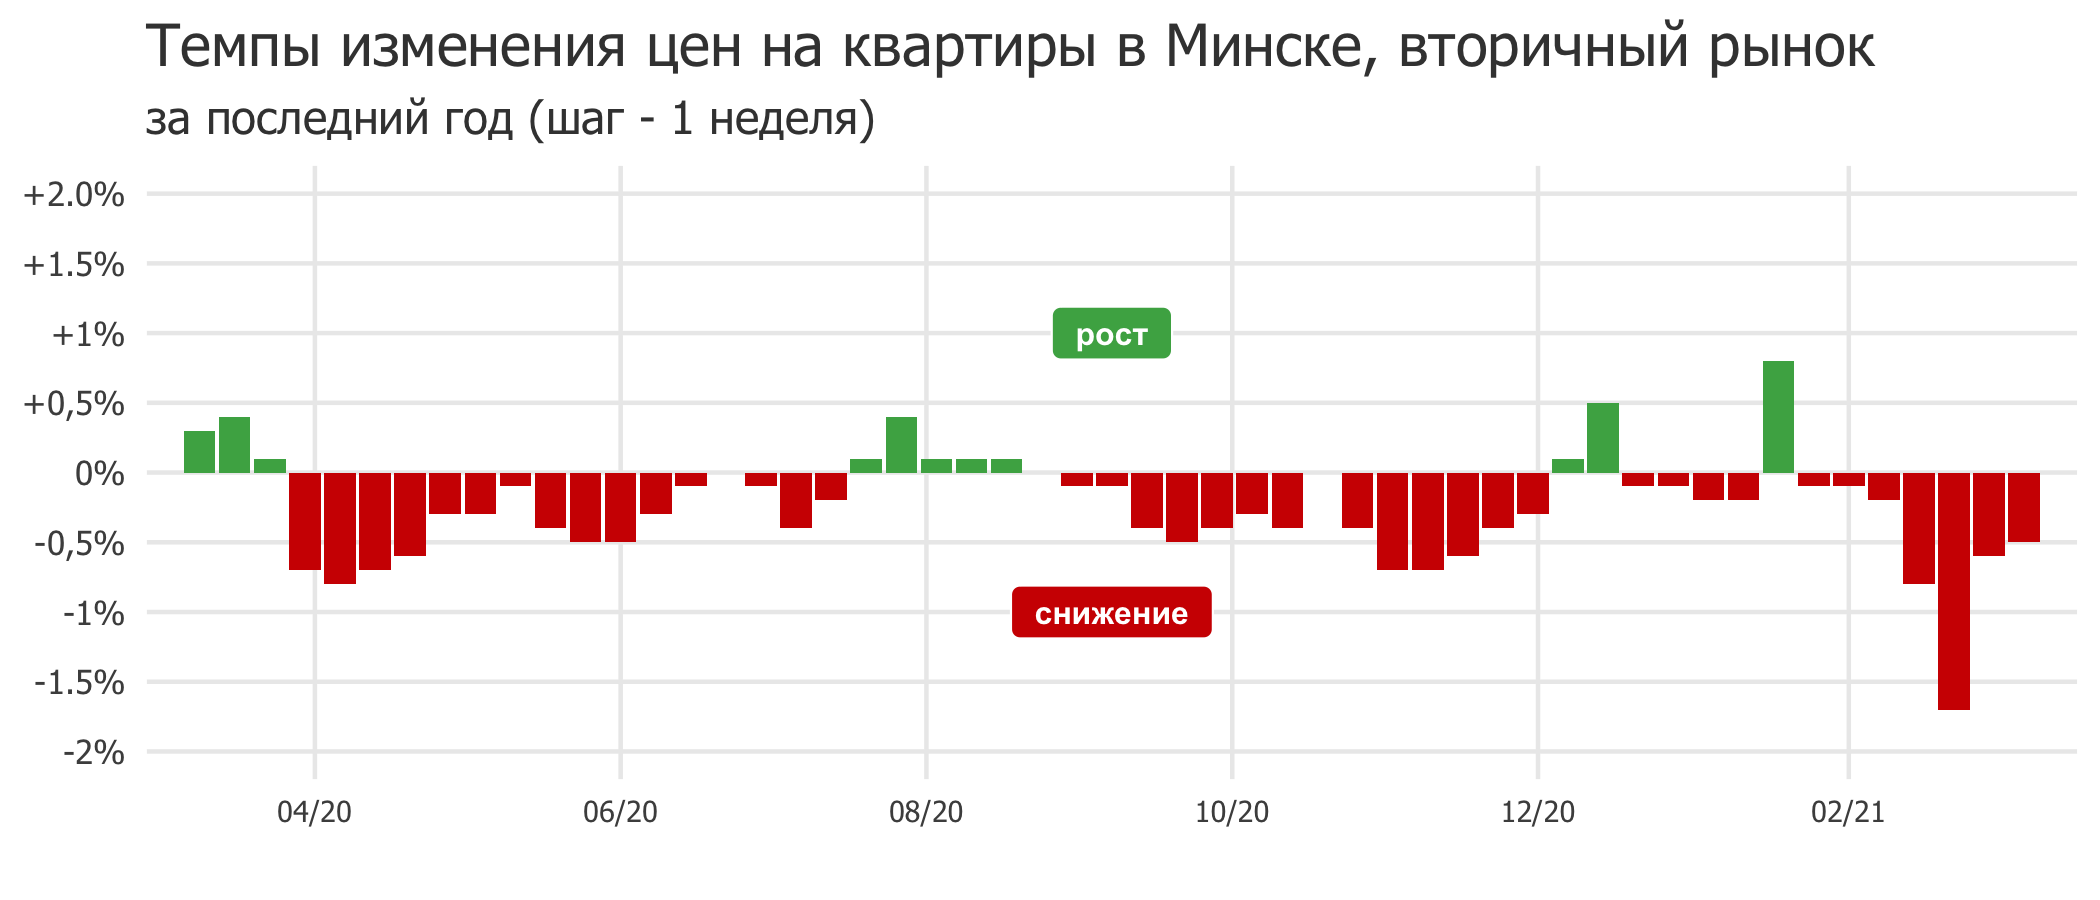 Мониторинг цен предложения квартир в Минске за 1-8 марта 2021 года